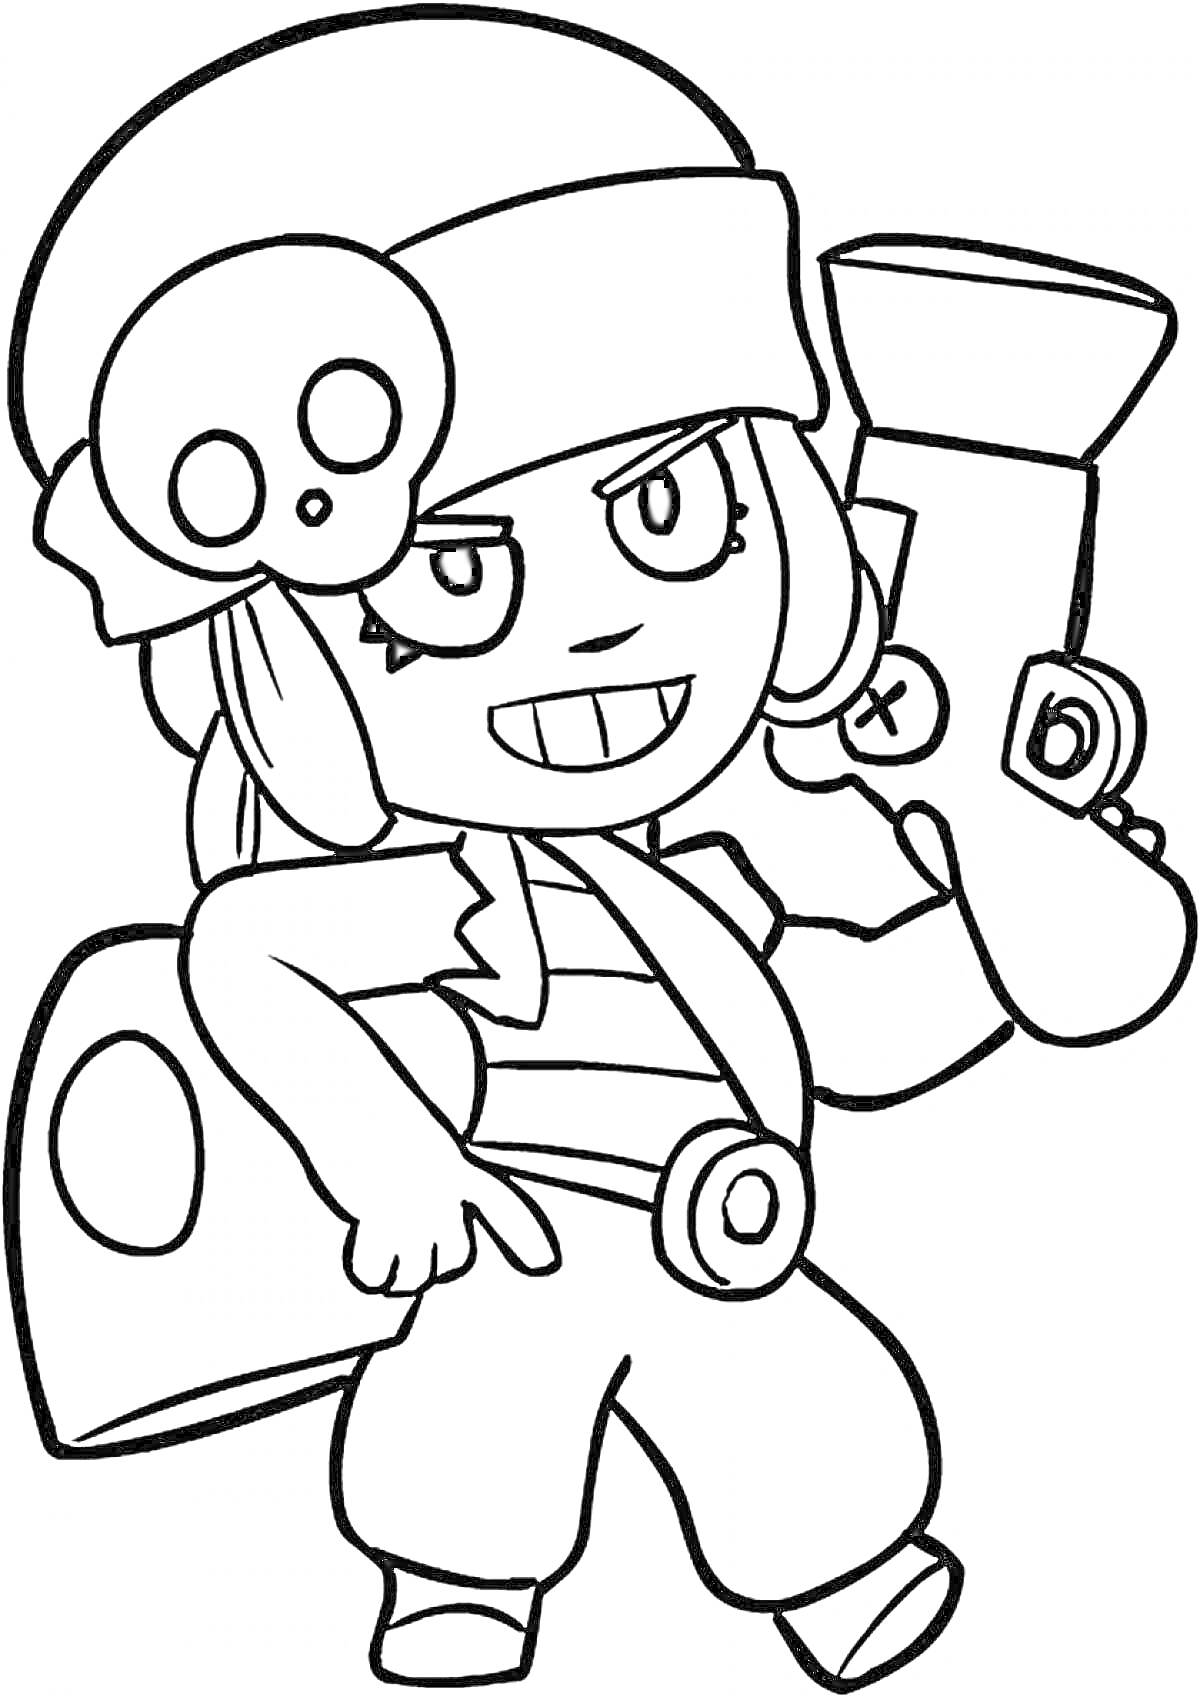 Раскраска Персонаж из игры Браво Старс с шапкой с черепом и пушкой